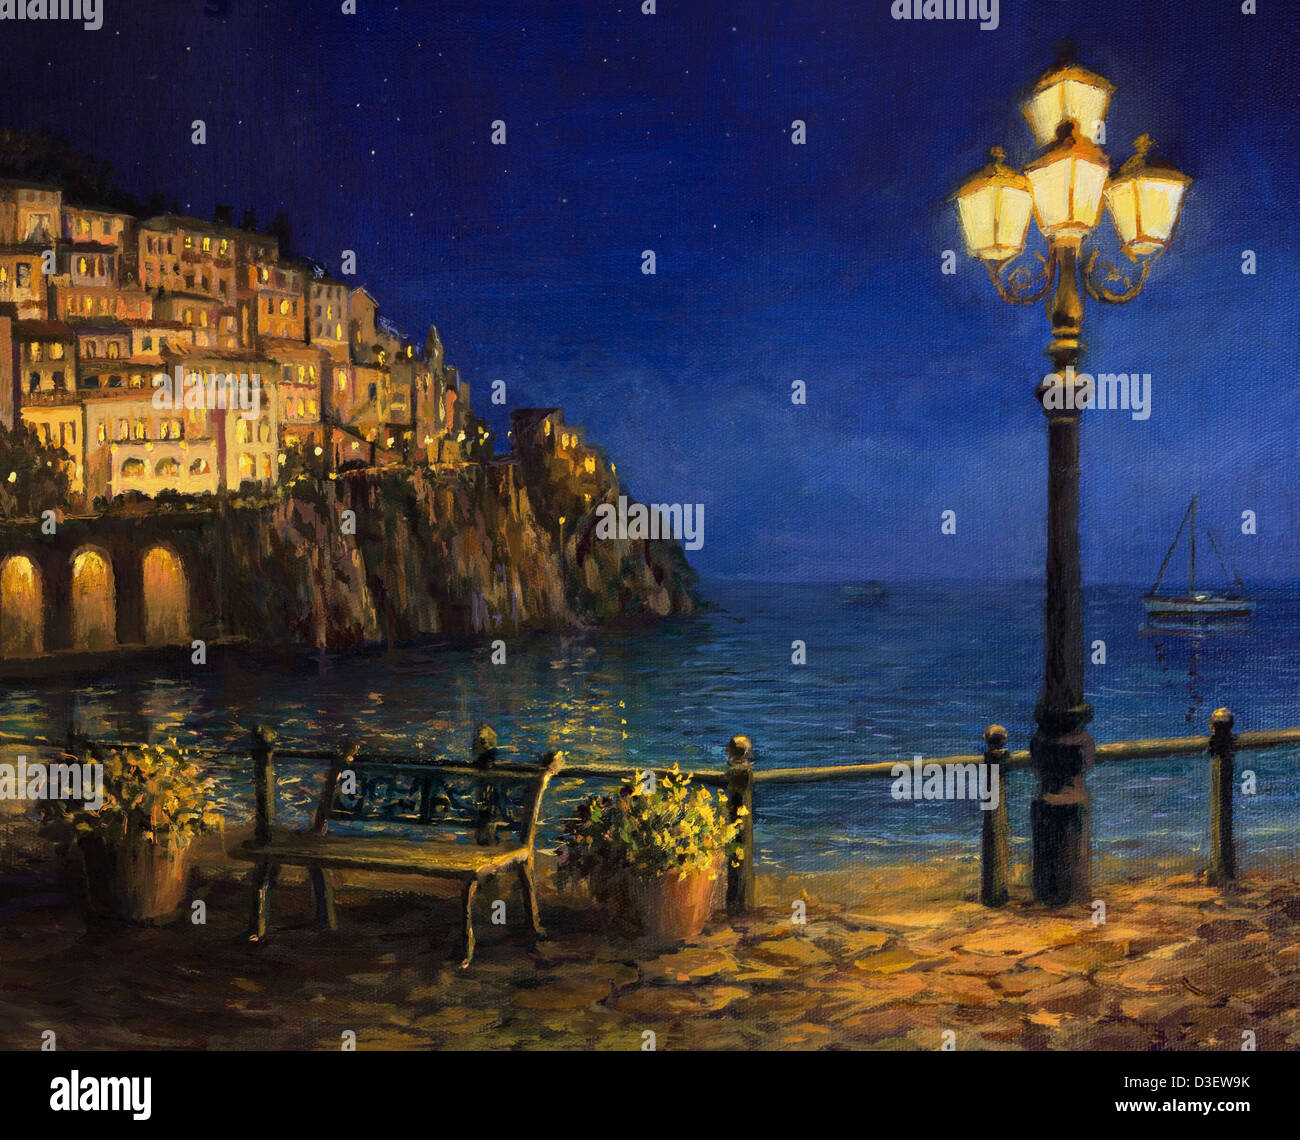 Un dipinto ad olio su tela, di una stellata serata romantica presso la costa di Amalfi in Italia. Tranquilla estate scena notturna. Foto Stock